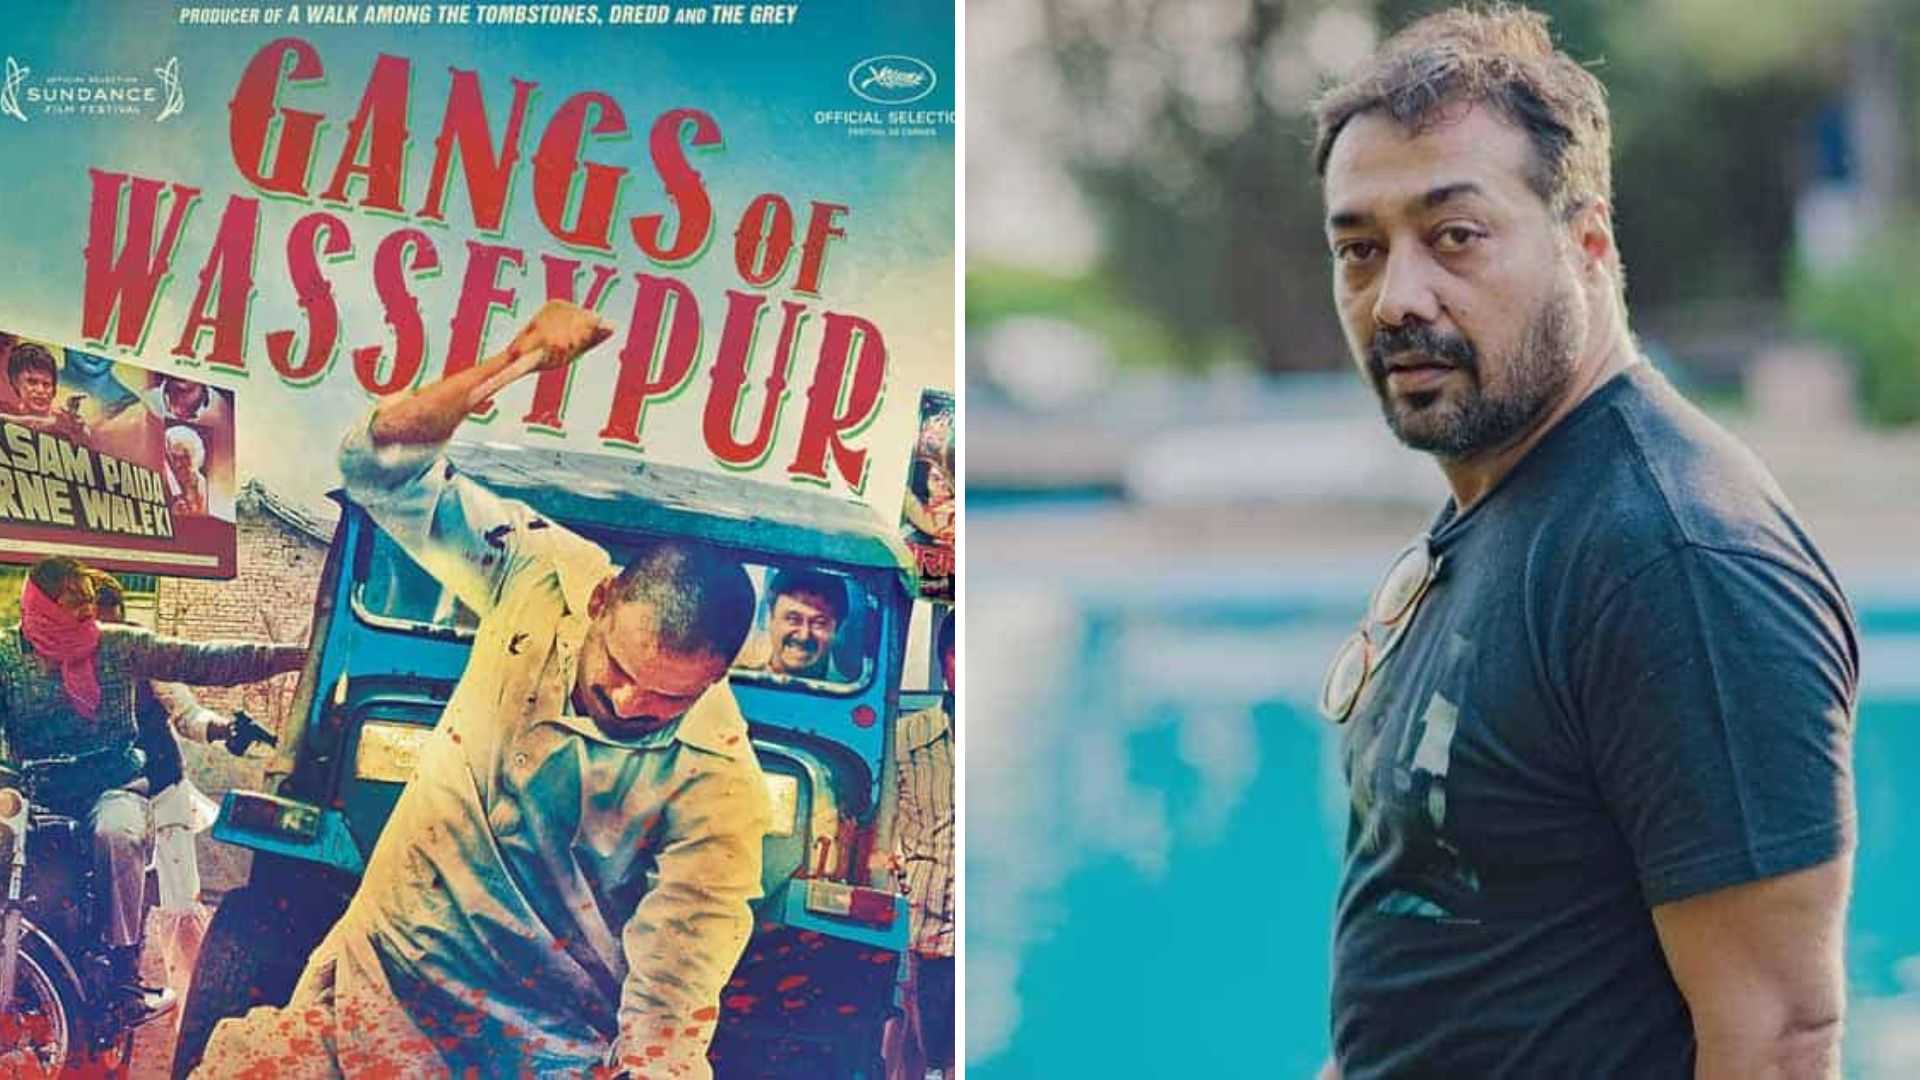 अनुराग कश्यप से खो गई थी 'गैंग्स ऑफ वासेपुर' की स्क्रिप्ट, नहीं जानते होंगे फिल्म के दिलचस्प किस्से